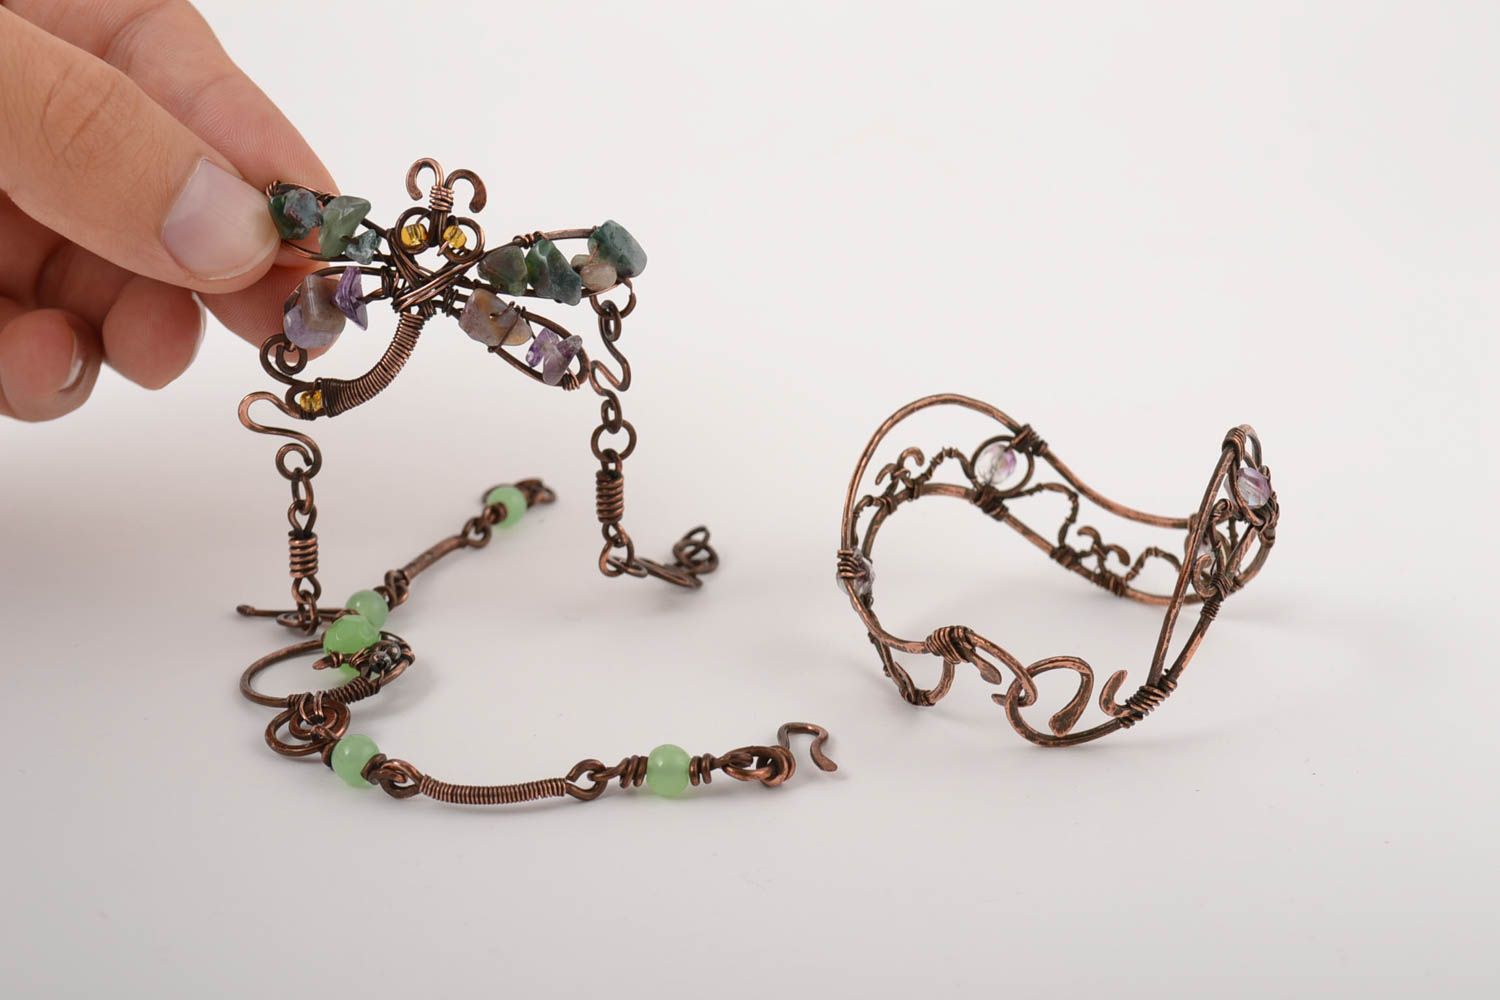 Медные браслеты ручной работы украшения в технике wire wrap 3 женские браслеты фото 4